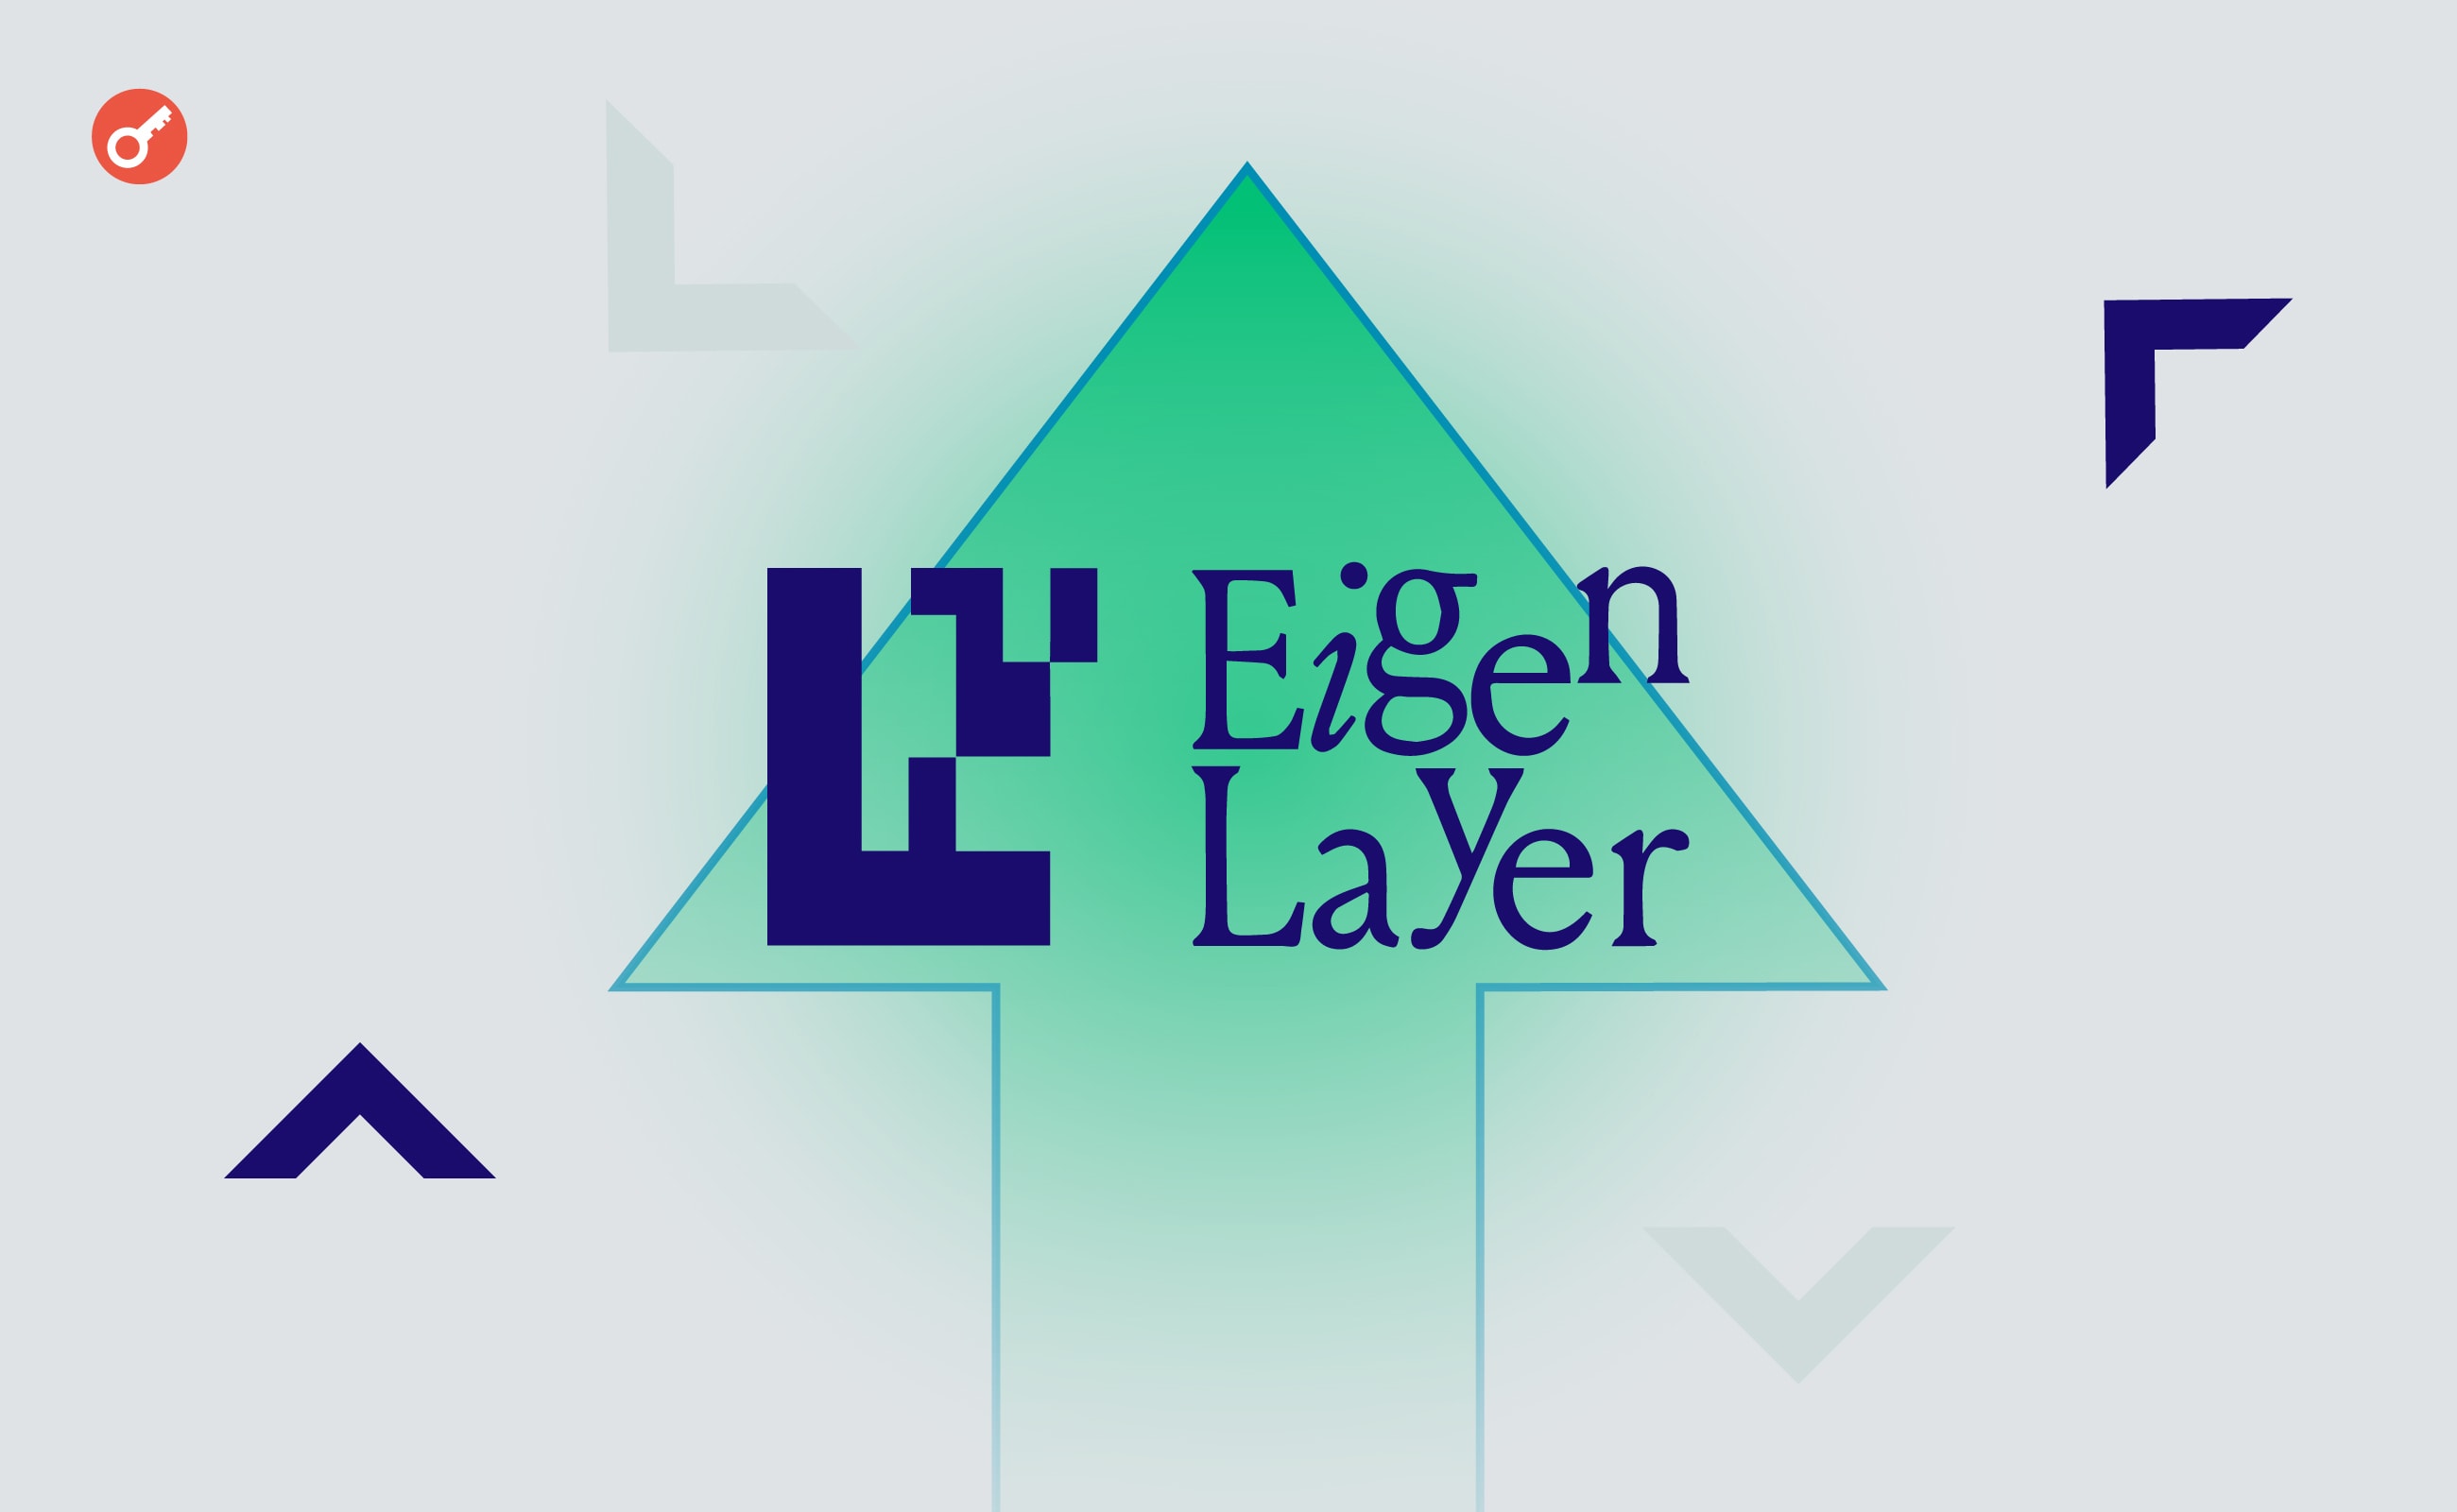 TVL EigenLayer пересек отметку в $7 млрд. Заглавный коллаж новости.